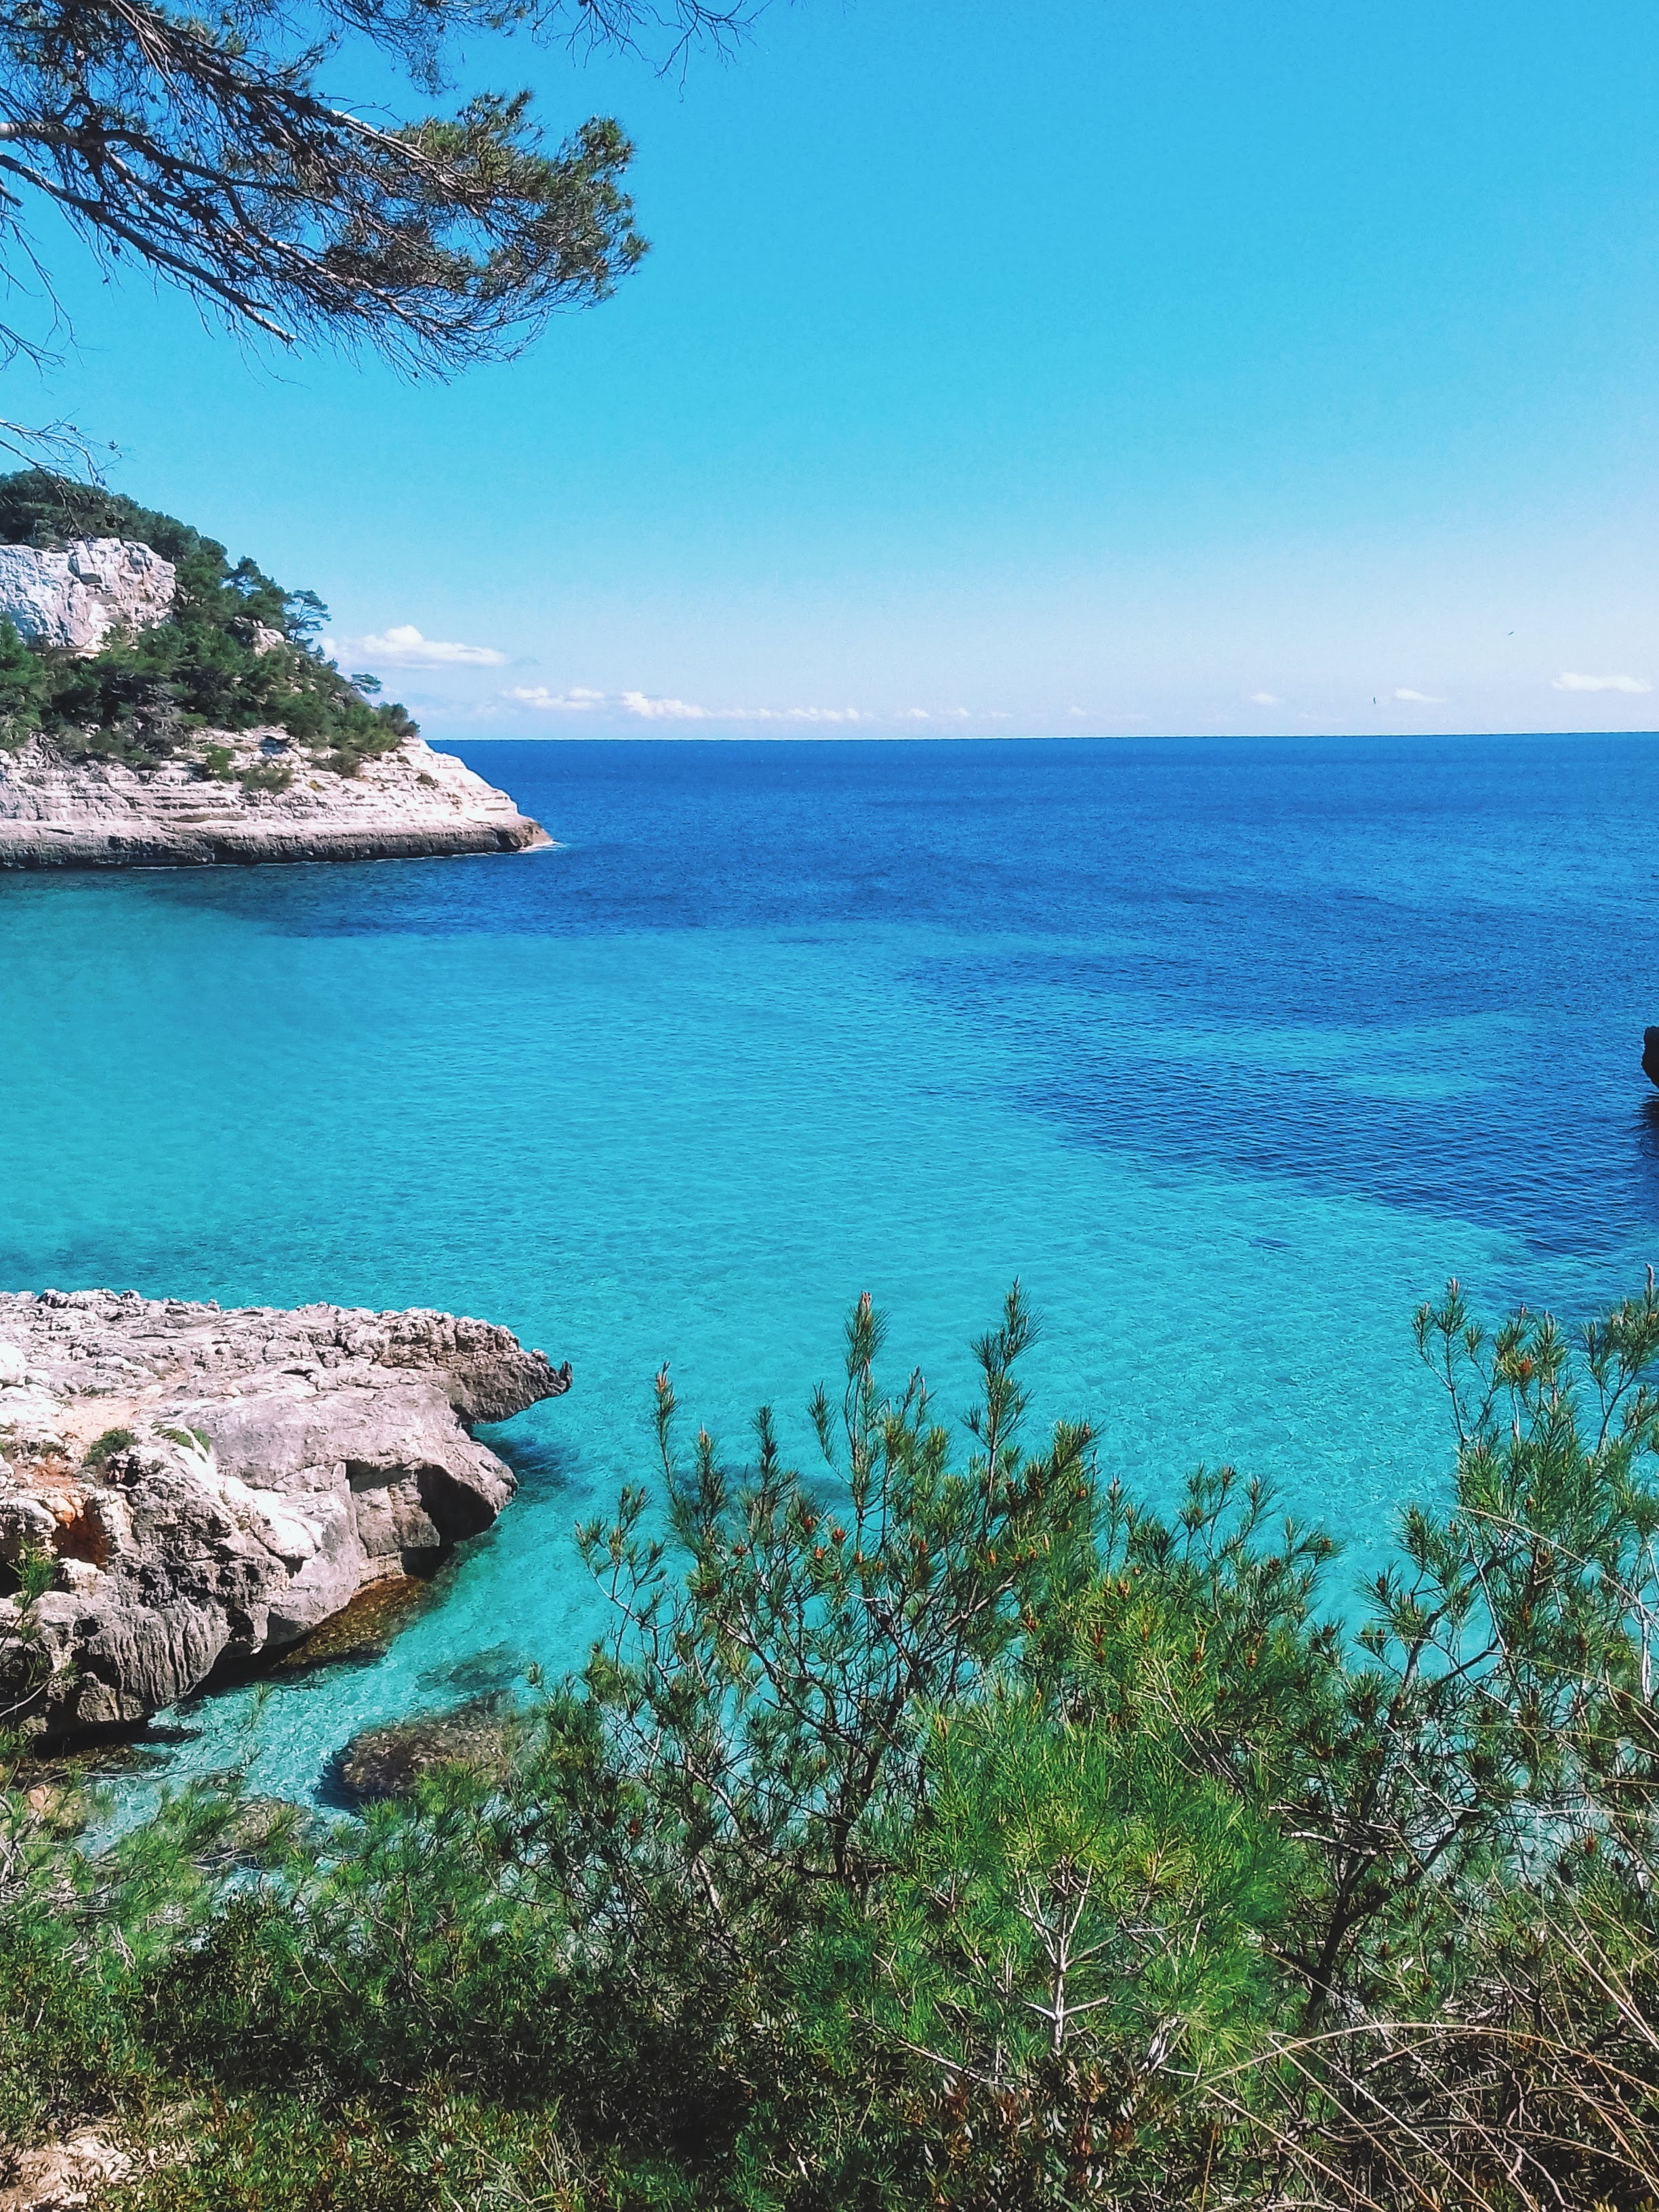 #2 Balearic Islands